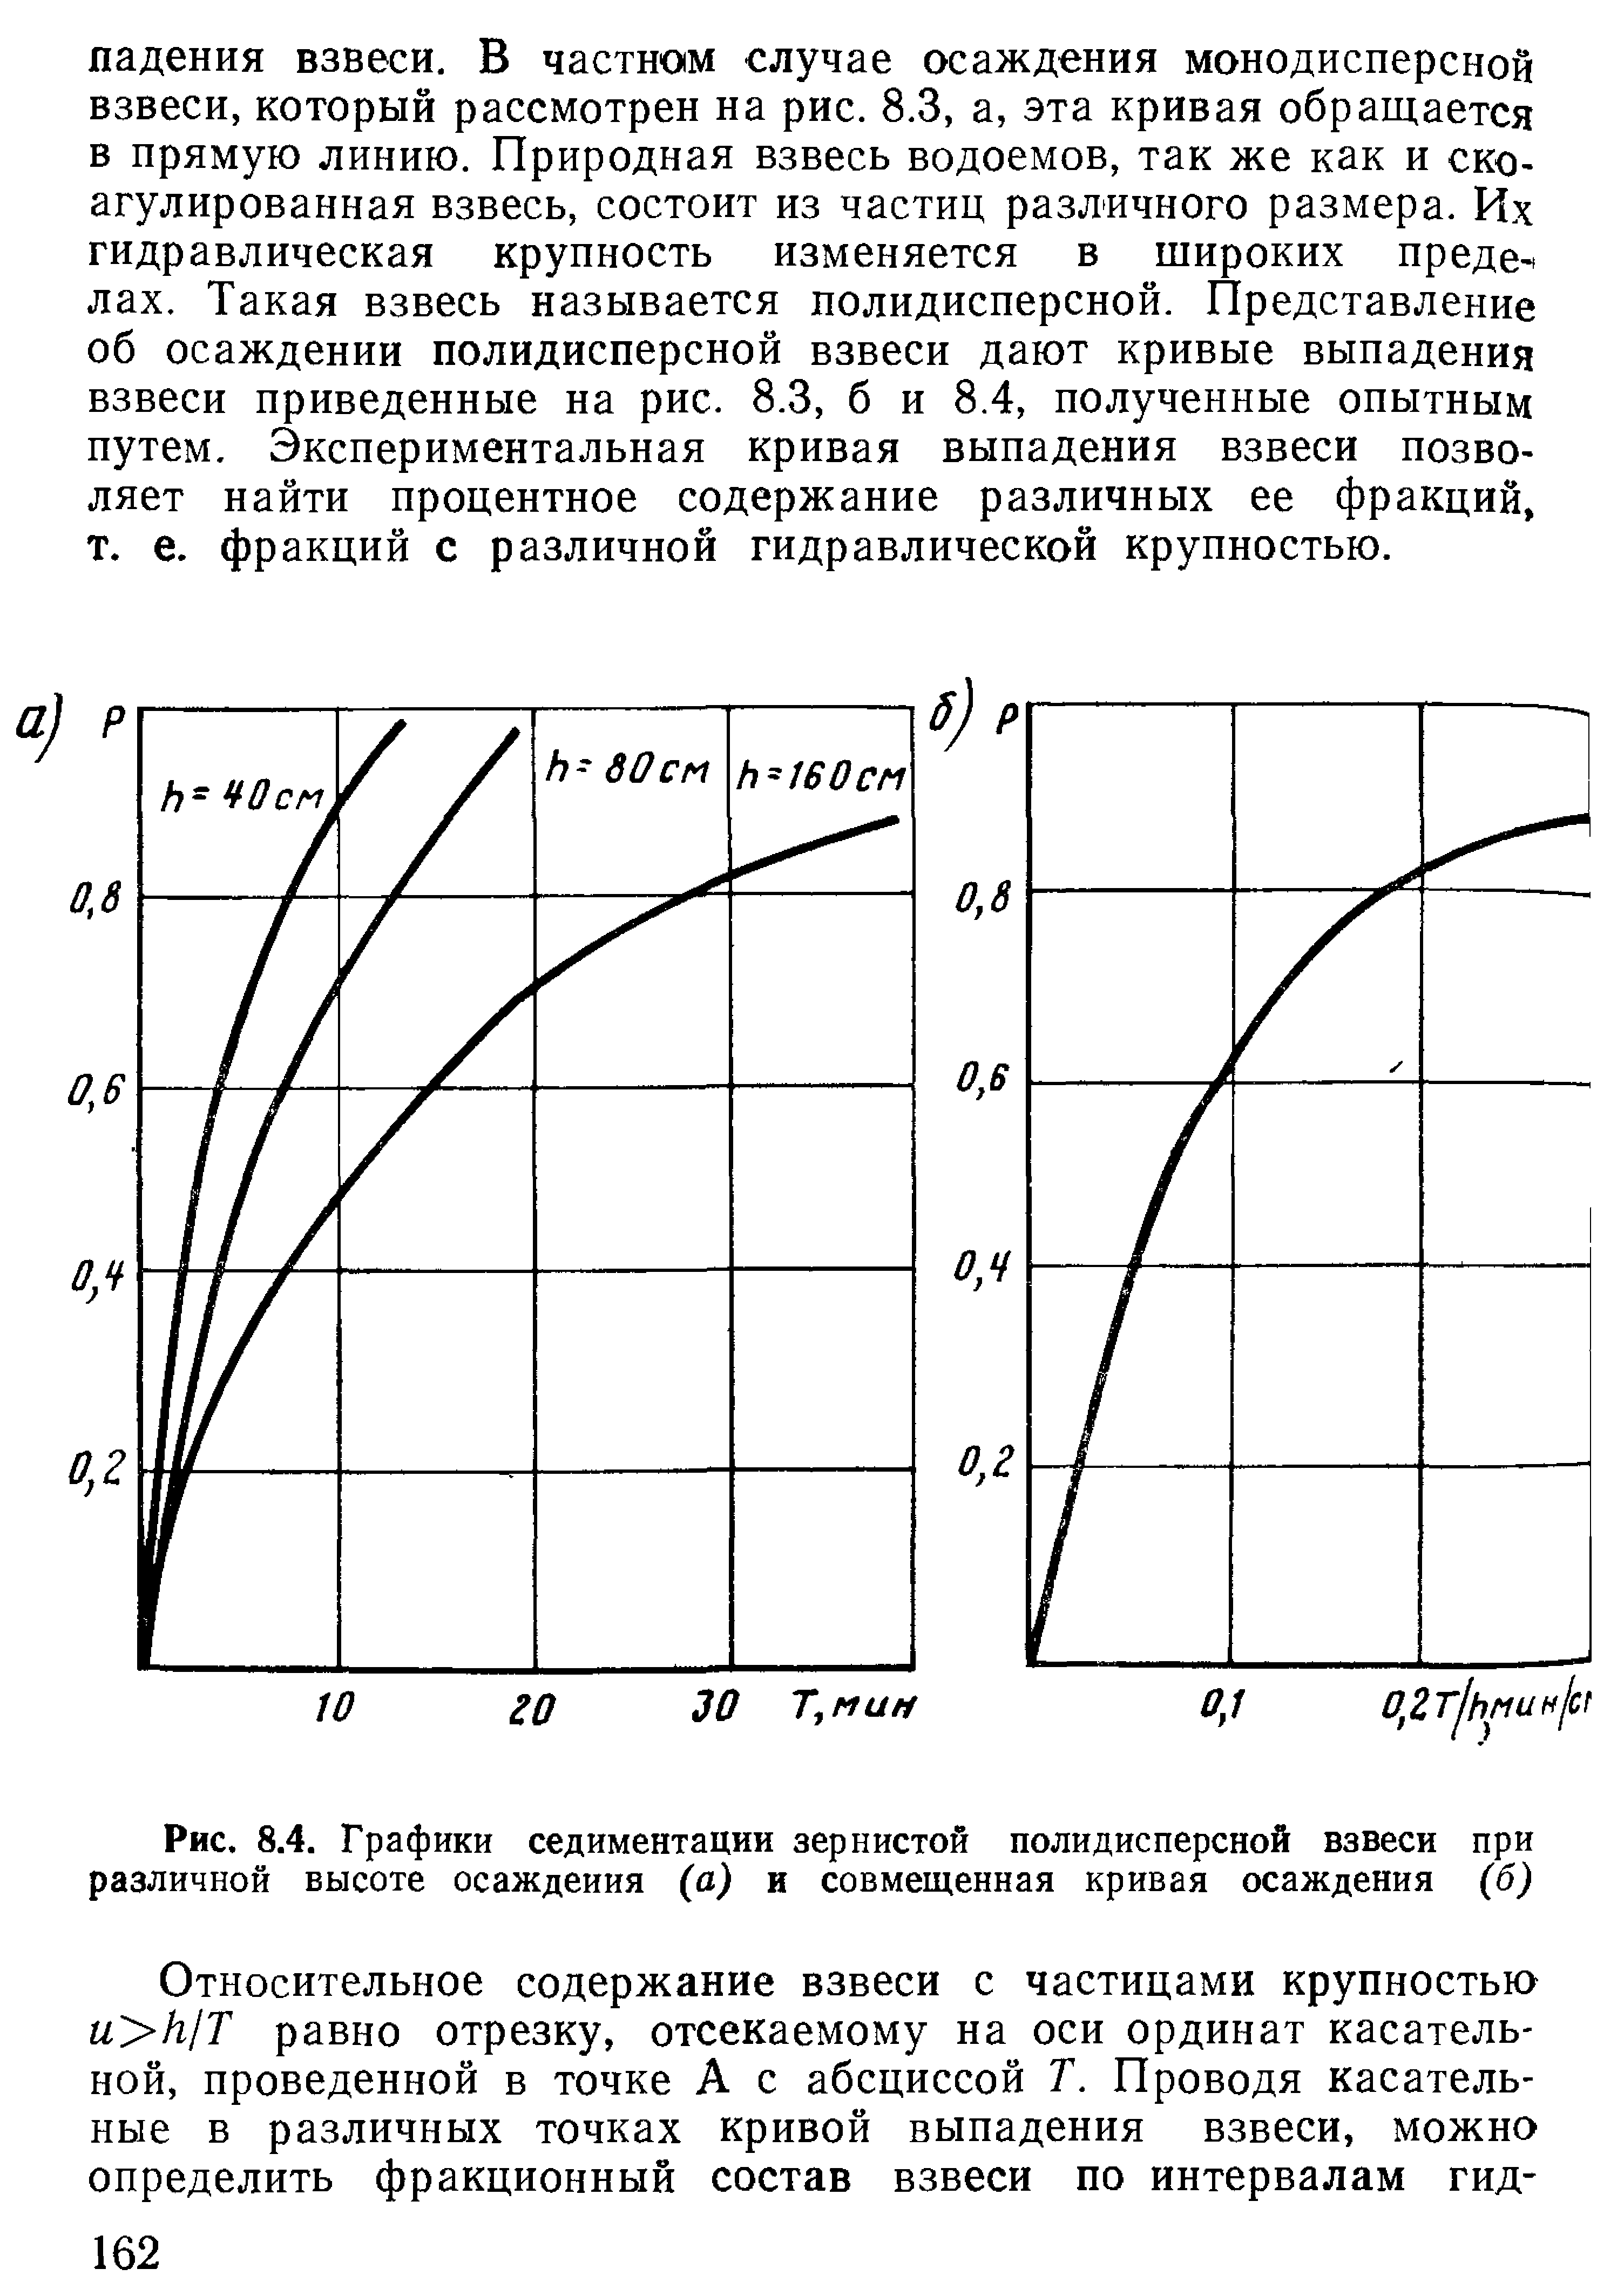 Рис. 8.4. Графики седиментации зернистой полидисперсной взвеси при различной высоте осаждения (а) и совмещенная кривая осаждения (б)
